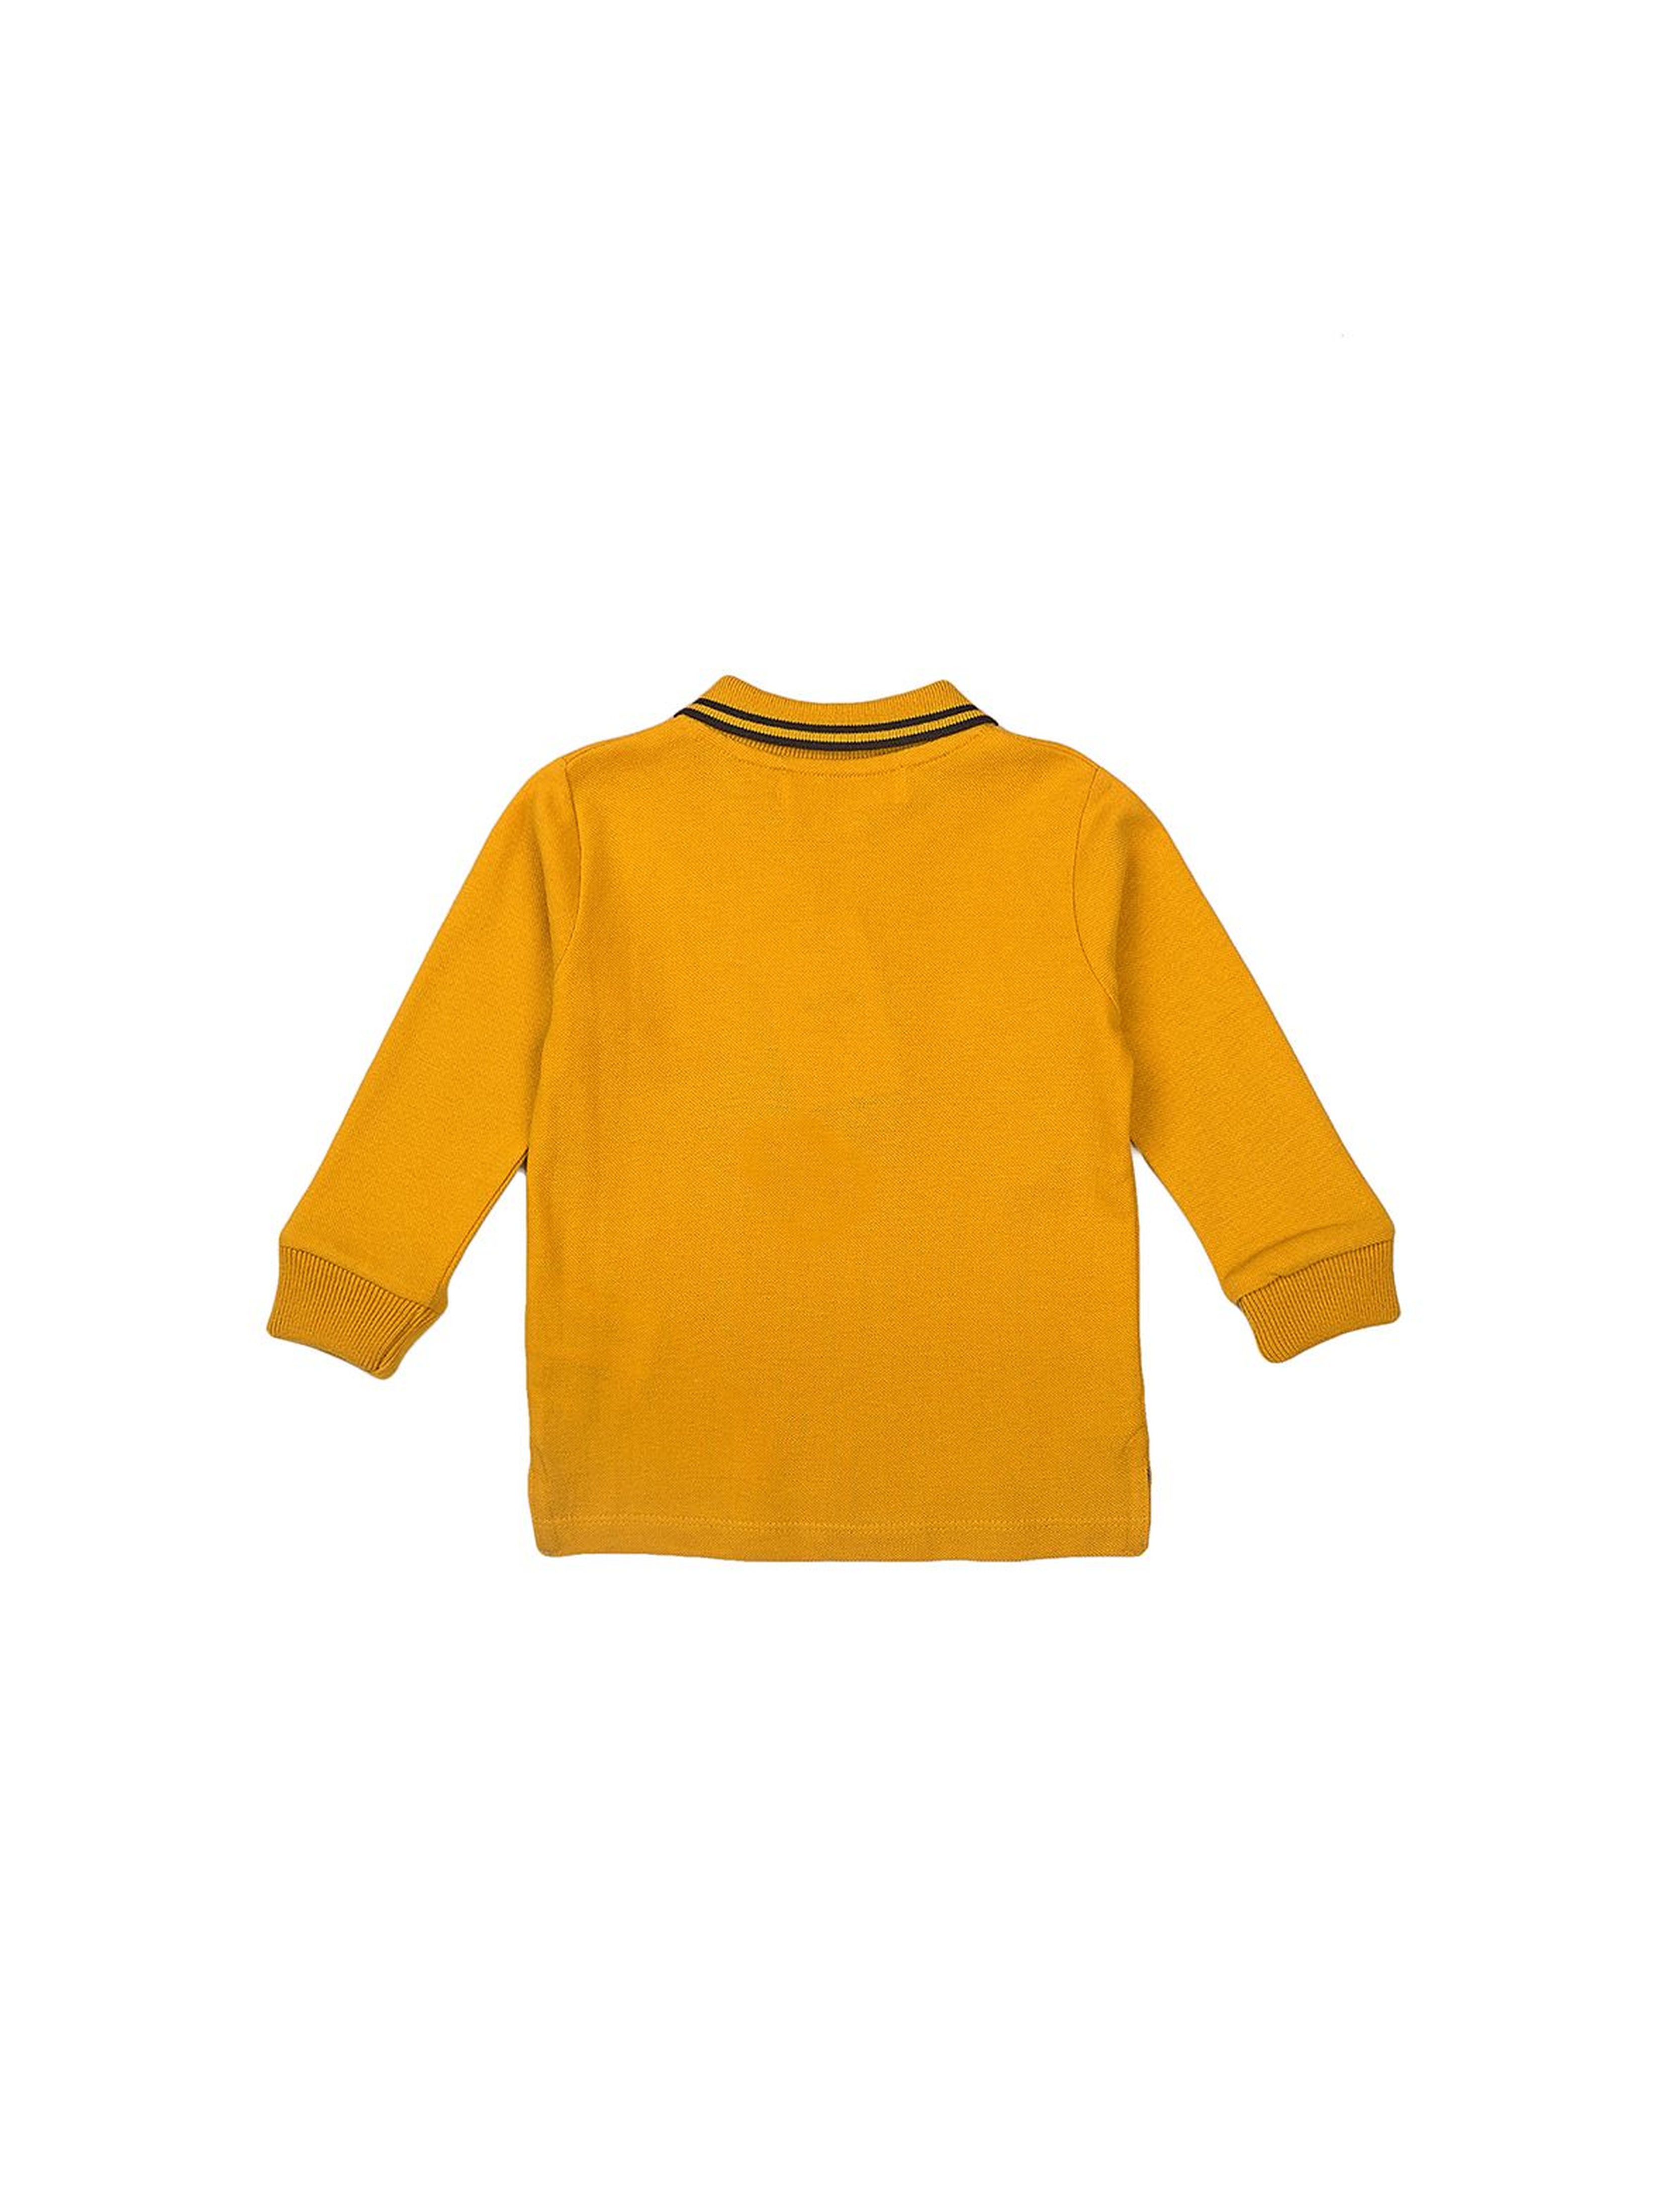 Bluzka chłopięca bawełniana z kołnierzykiem - żółta